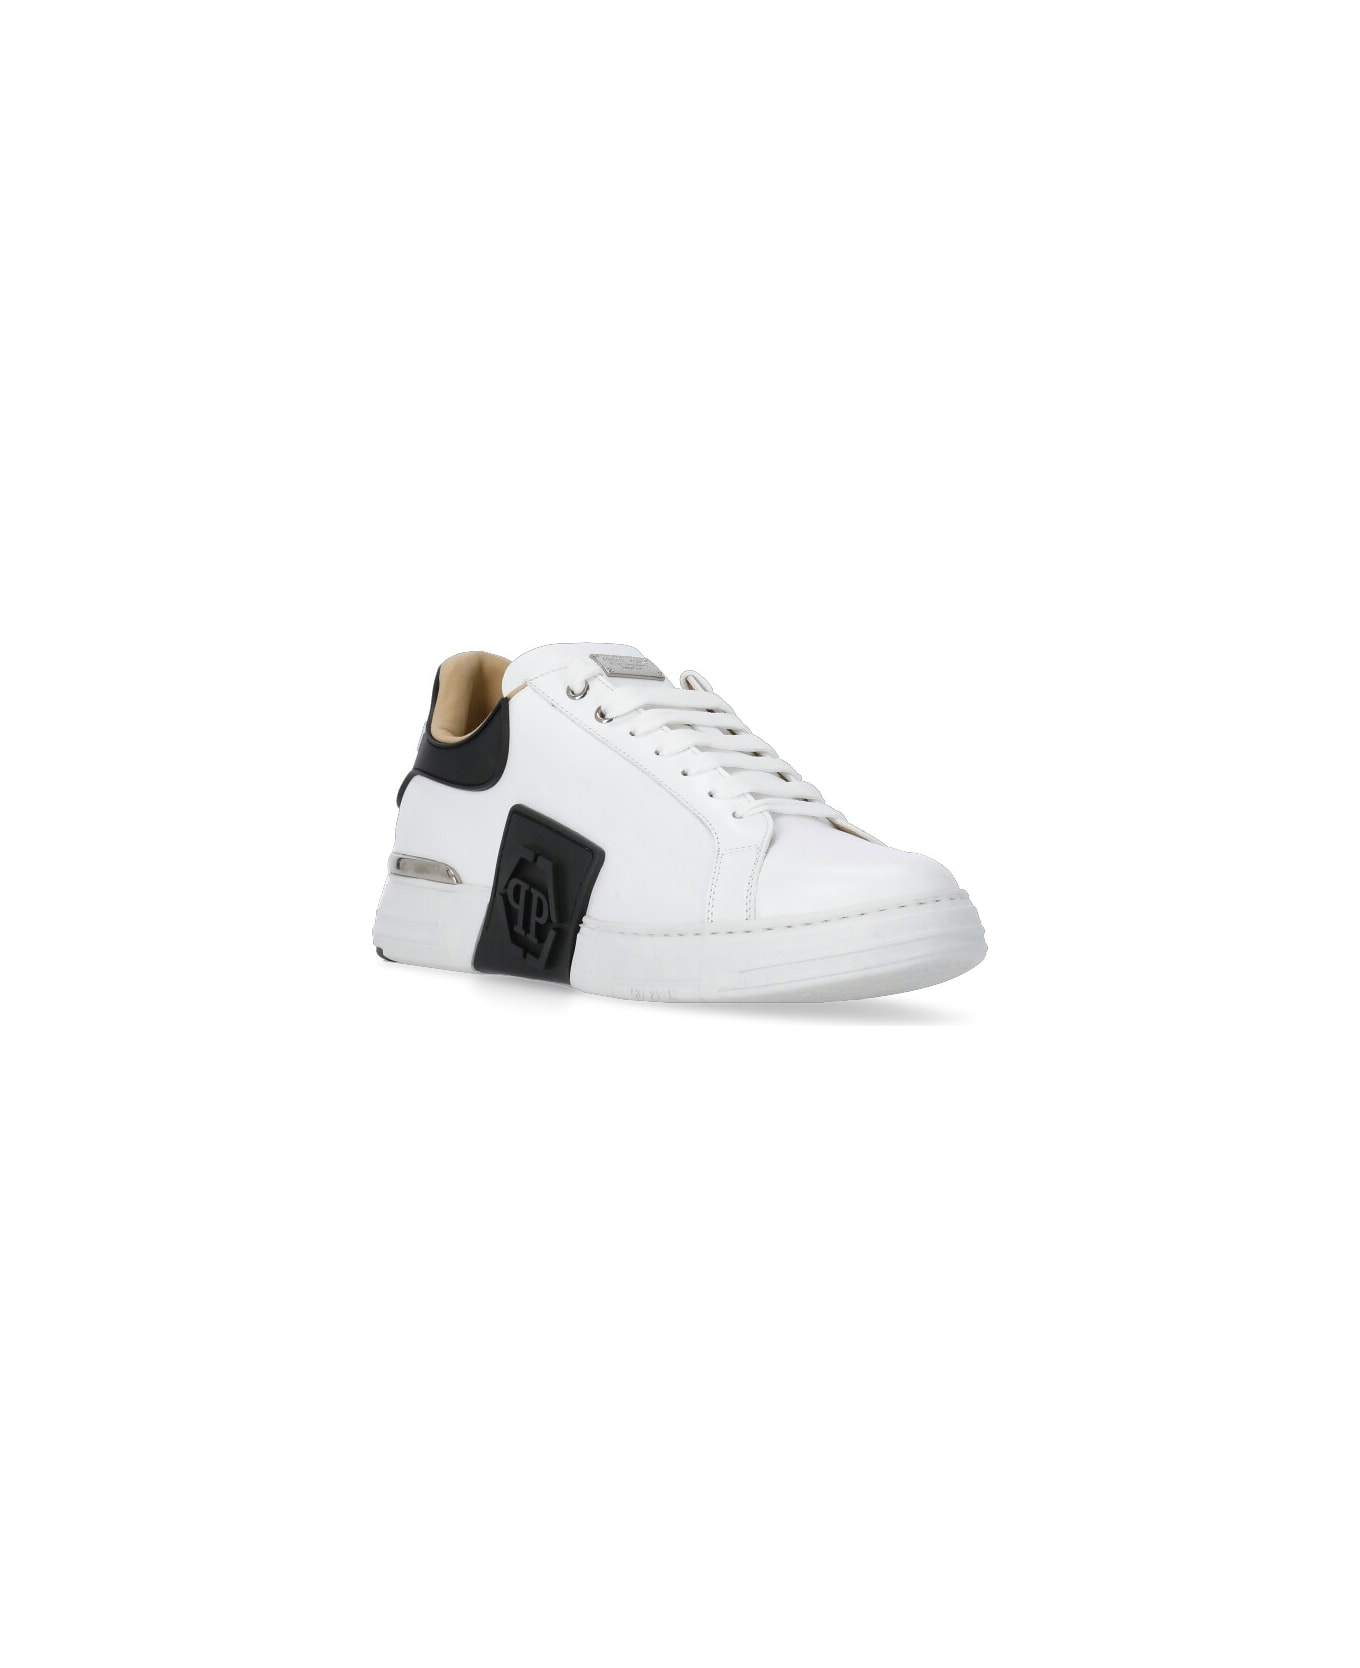 Philipp Plein Phantom Kicks Sneakers - White